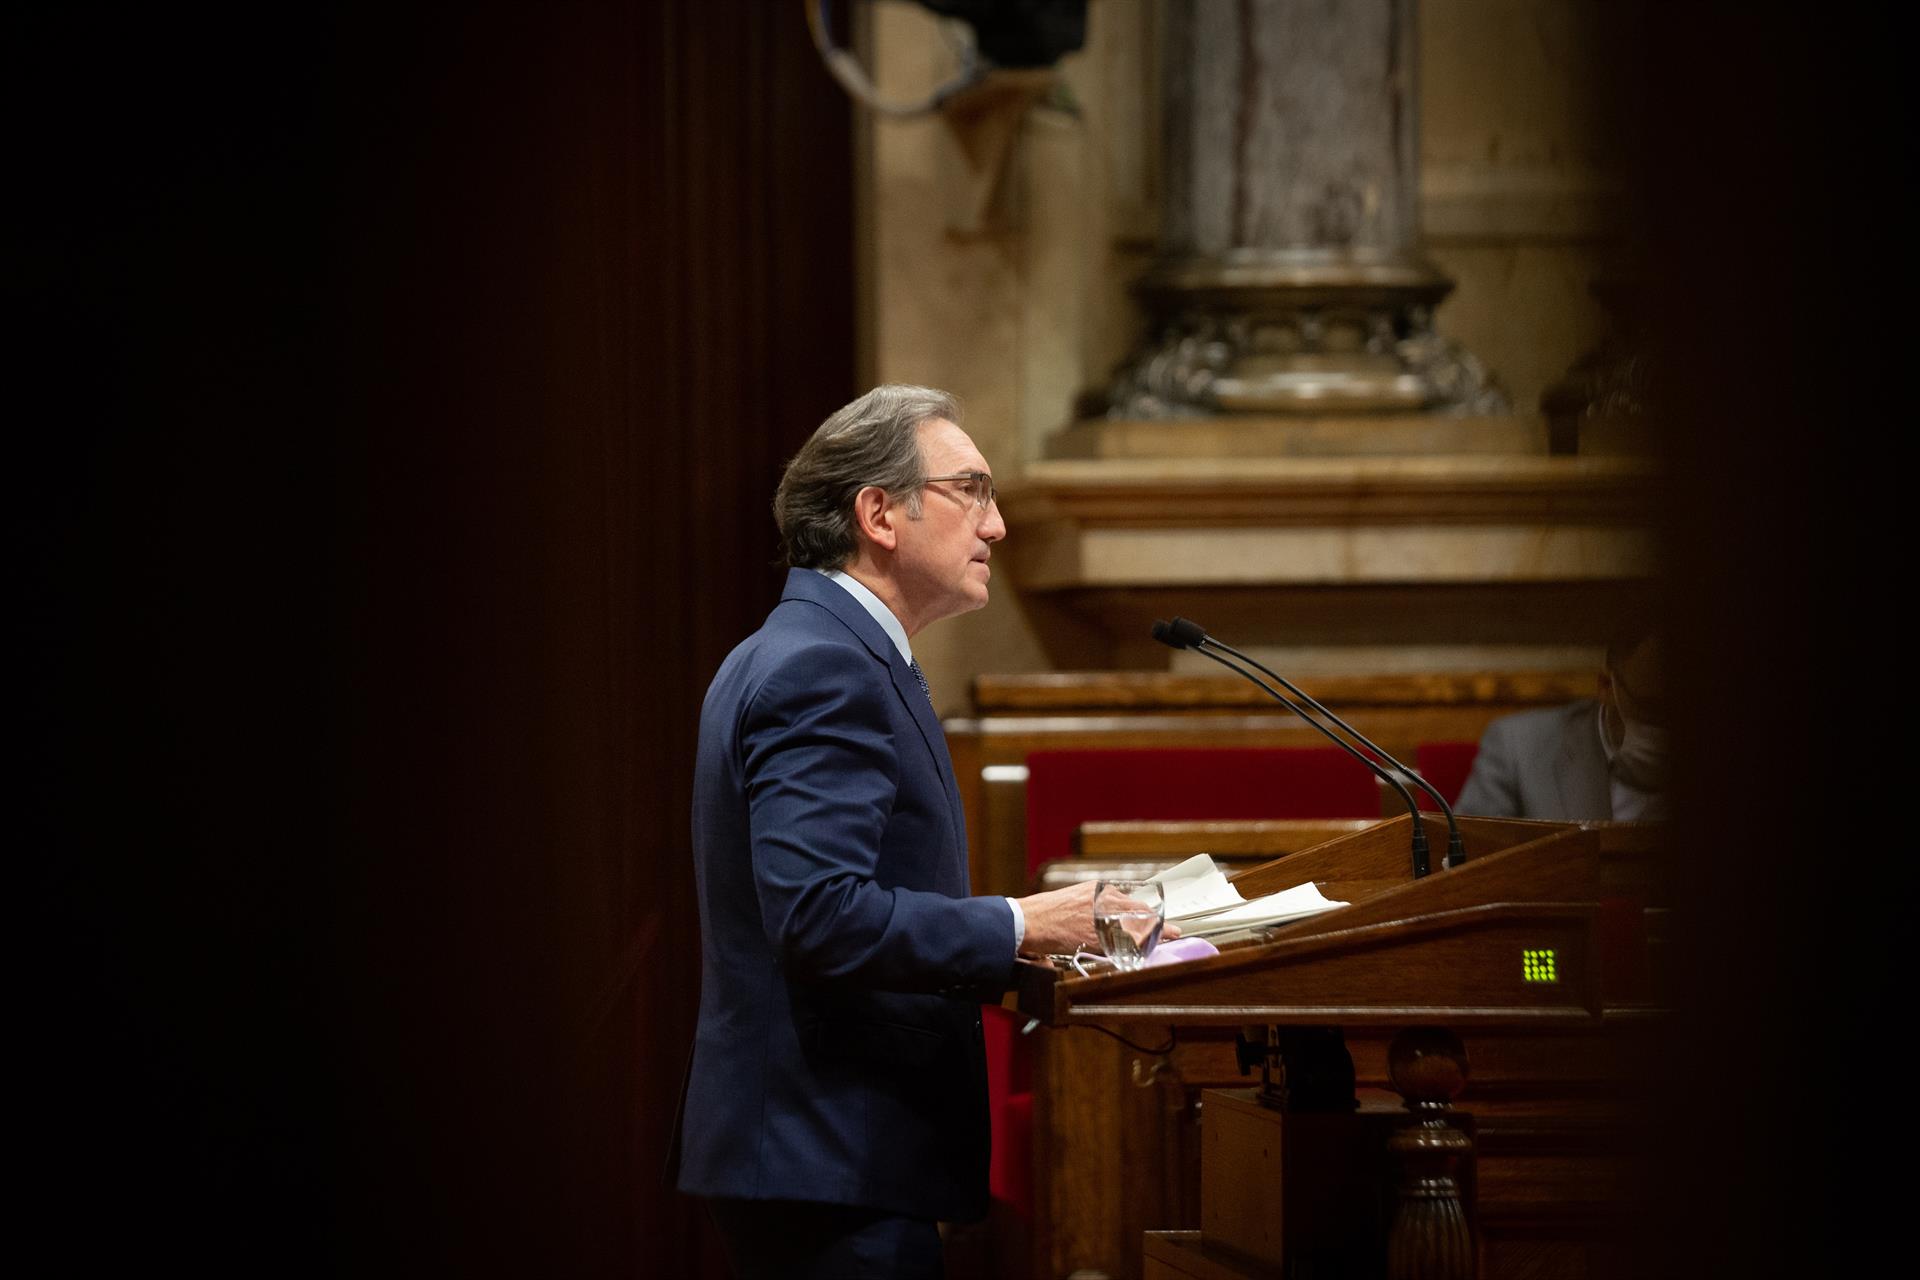 Giró dice que está abierto a negociar la financiación de Cataluña aunque aspira «a la plena soberanía»